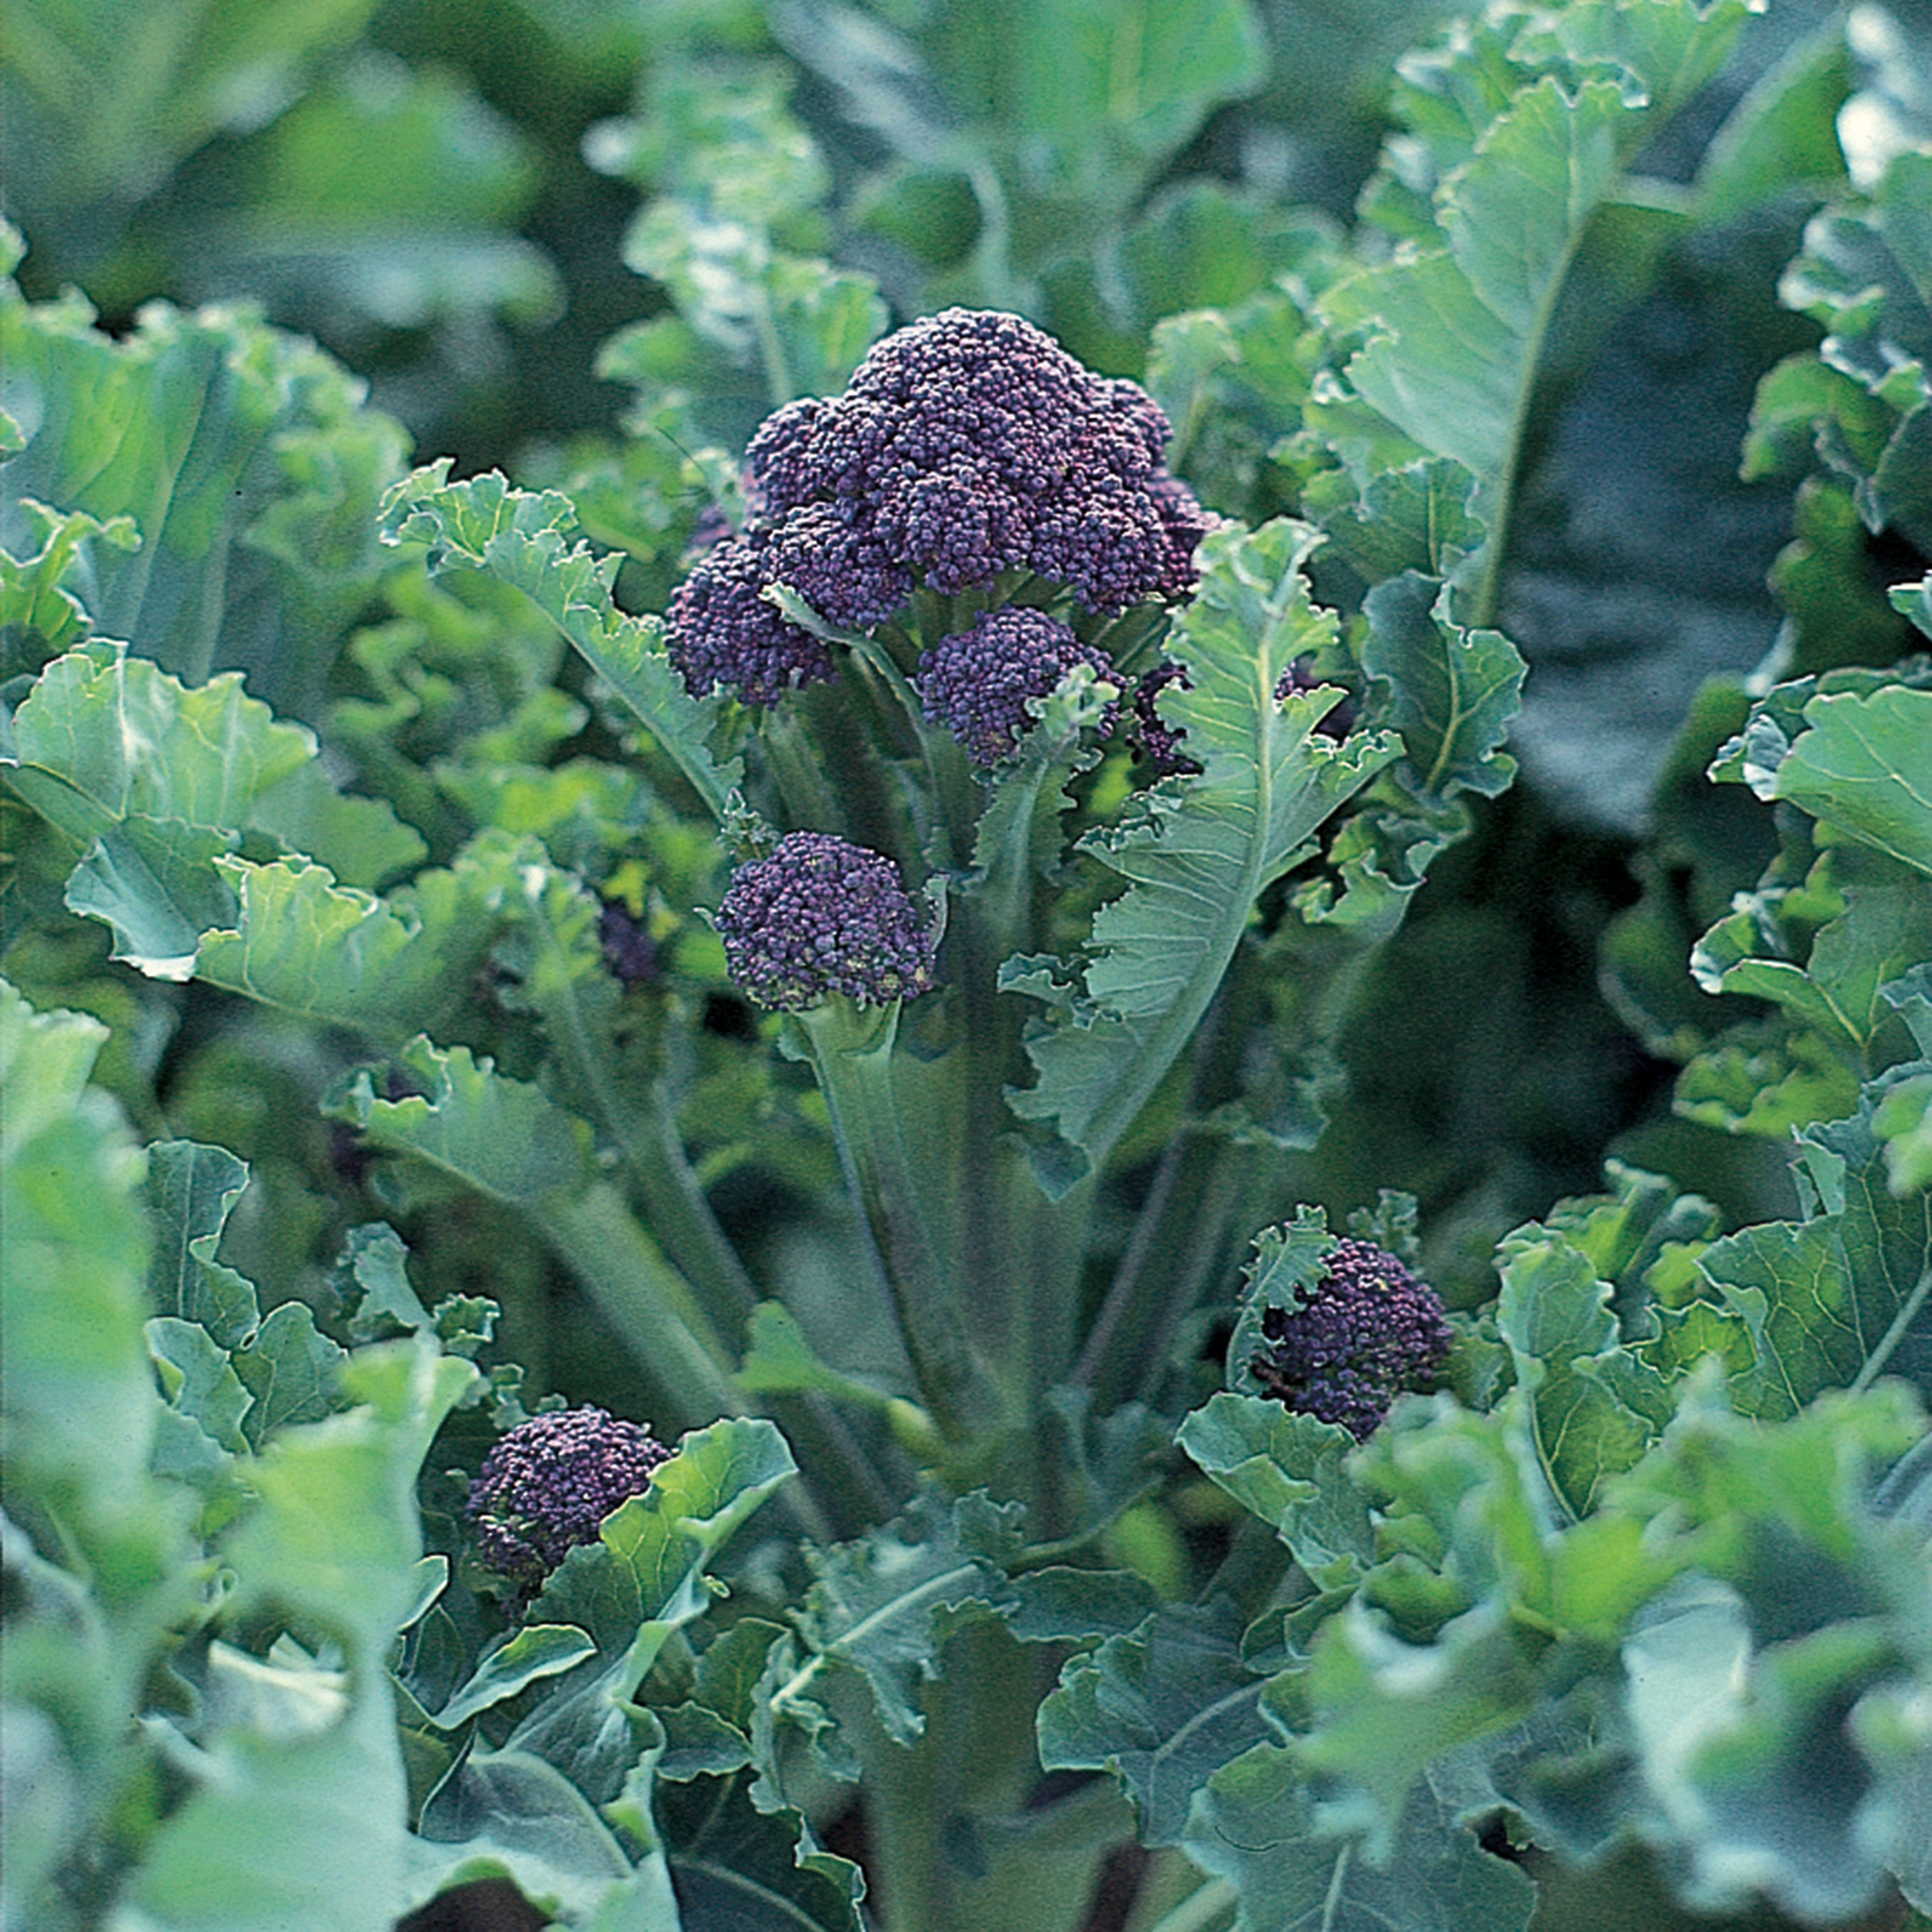 RHS Claret F1 Broccoli Seed